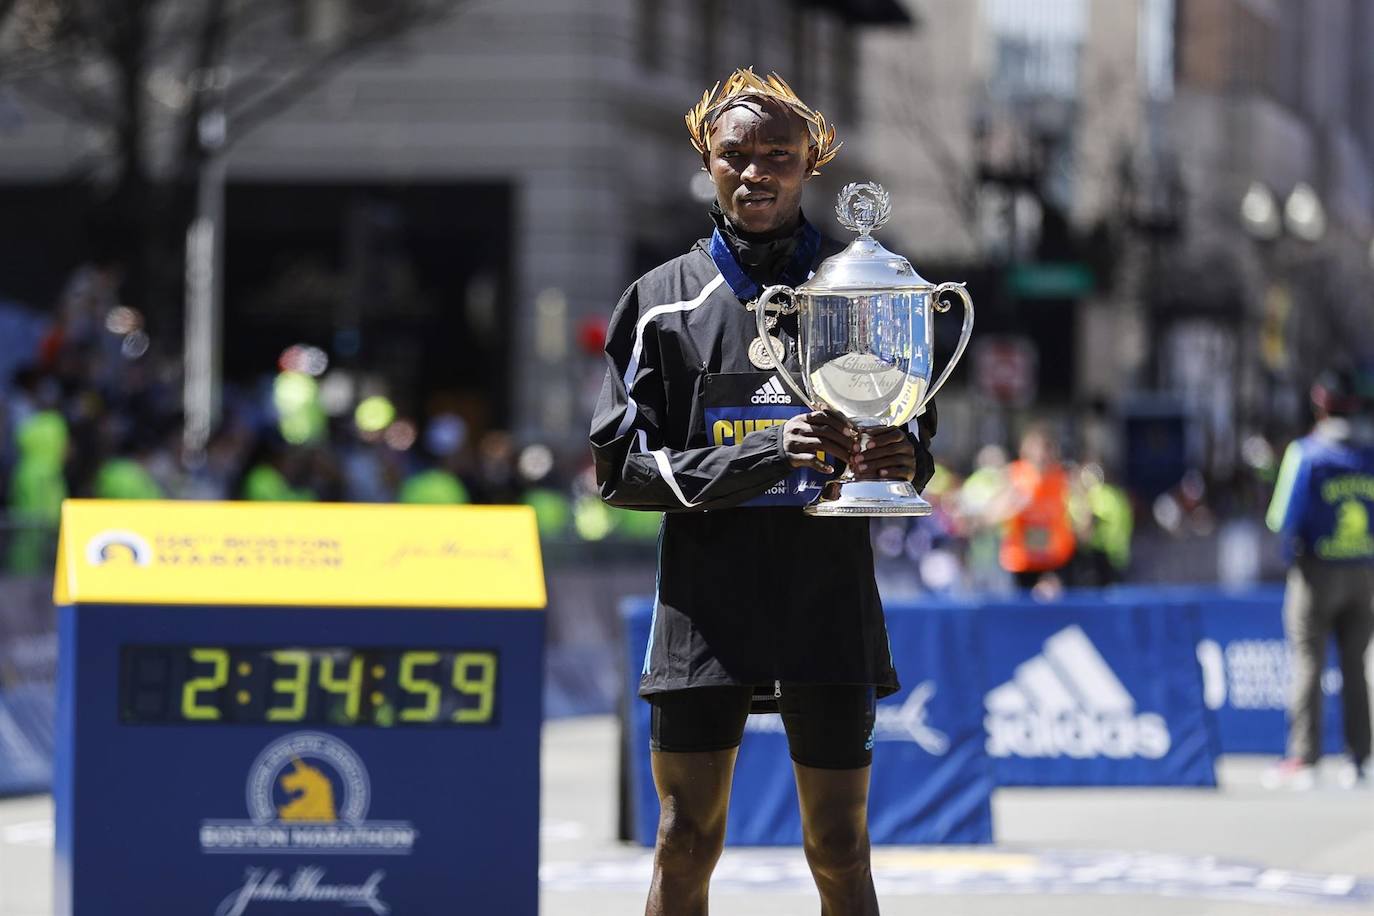 Fotos: Las imágenes más destacadas de la Maratón de Boston